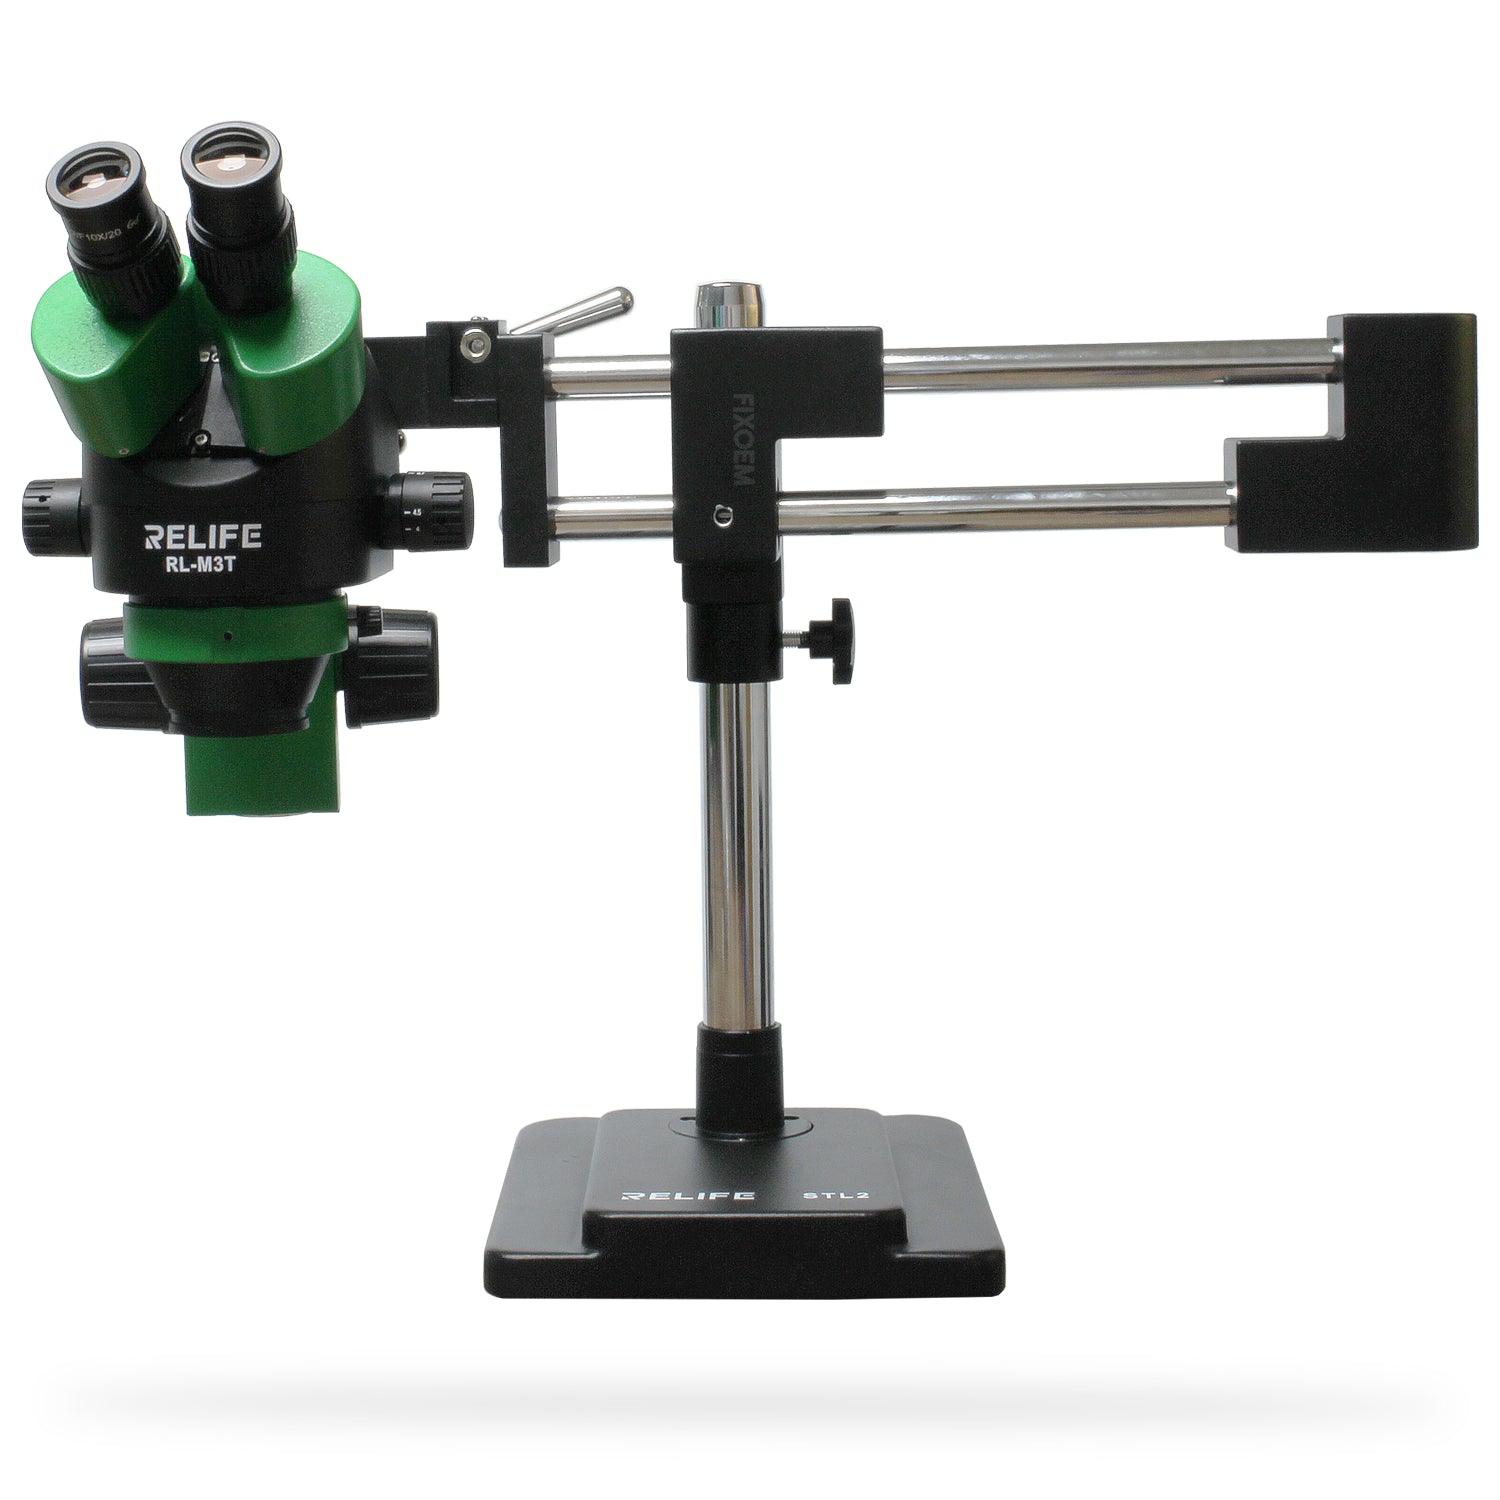 Microscopio Relife M3T-Stl2 Brazo Articulado Trinocular a solo $ 11200.00 Refaccion y puestos celulares, refurbish y microelectronica.- FixOEM